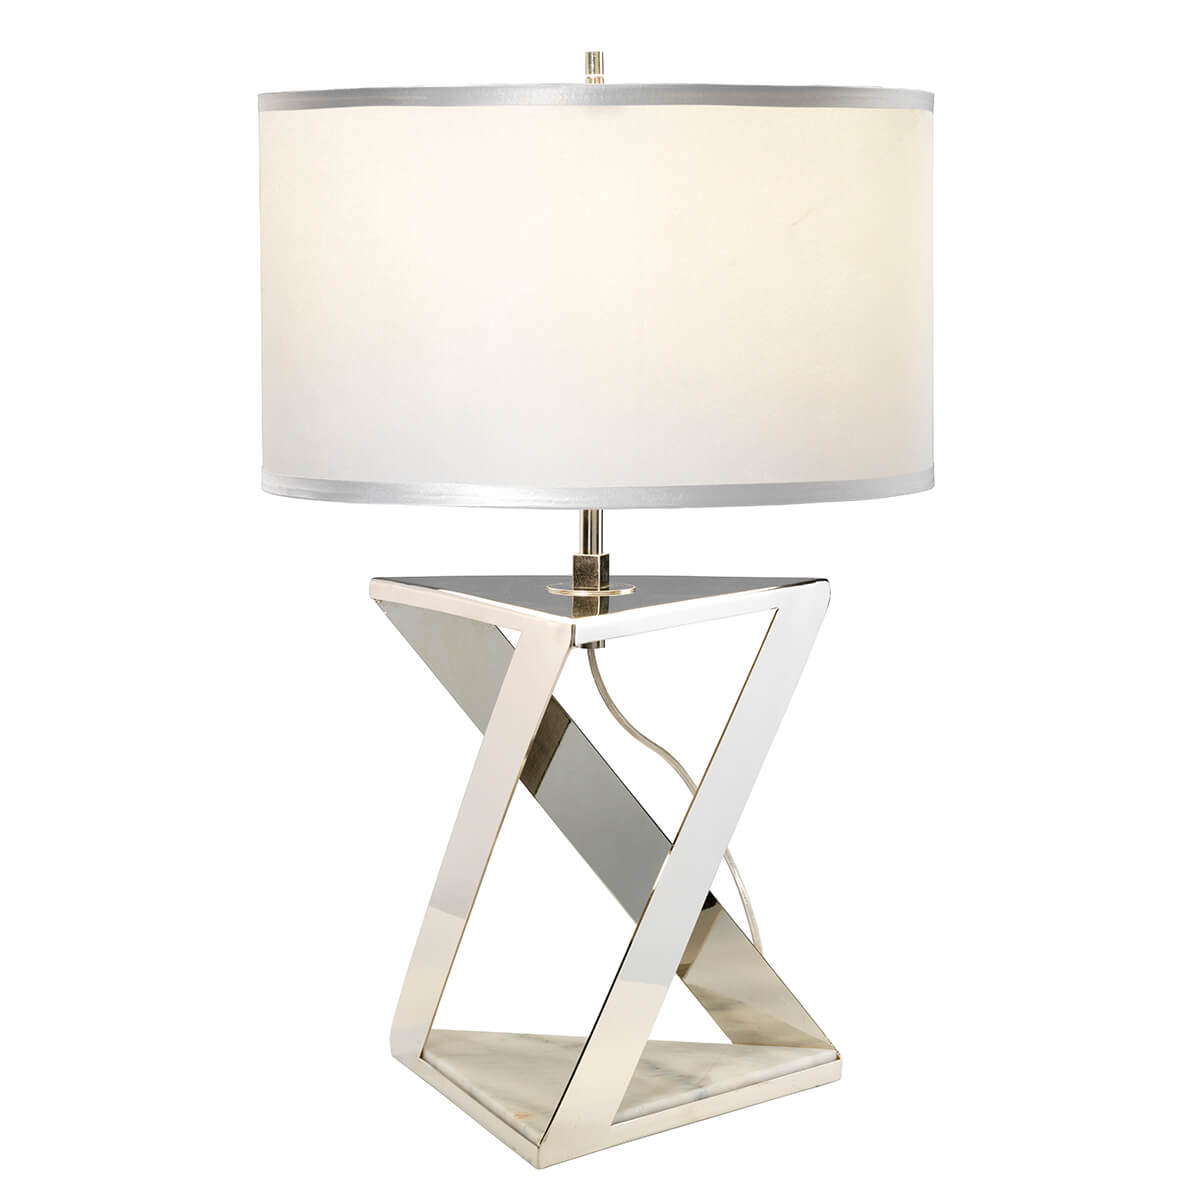 powyginana, geometryczna podstawa z marmurowym elementem, lampa stołowa z abażurem